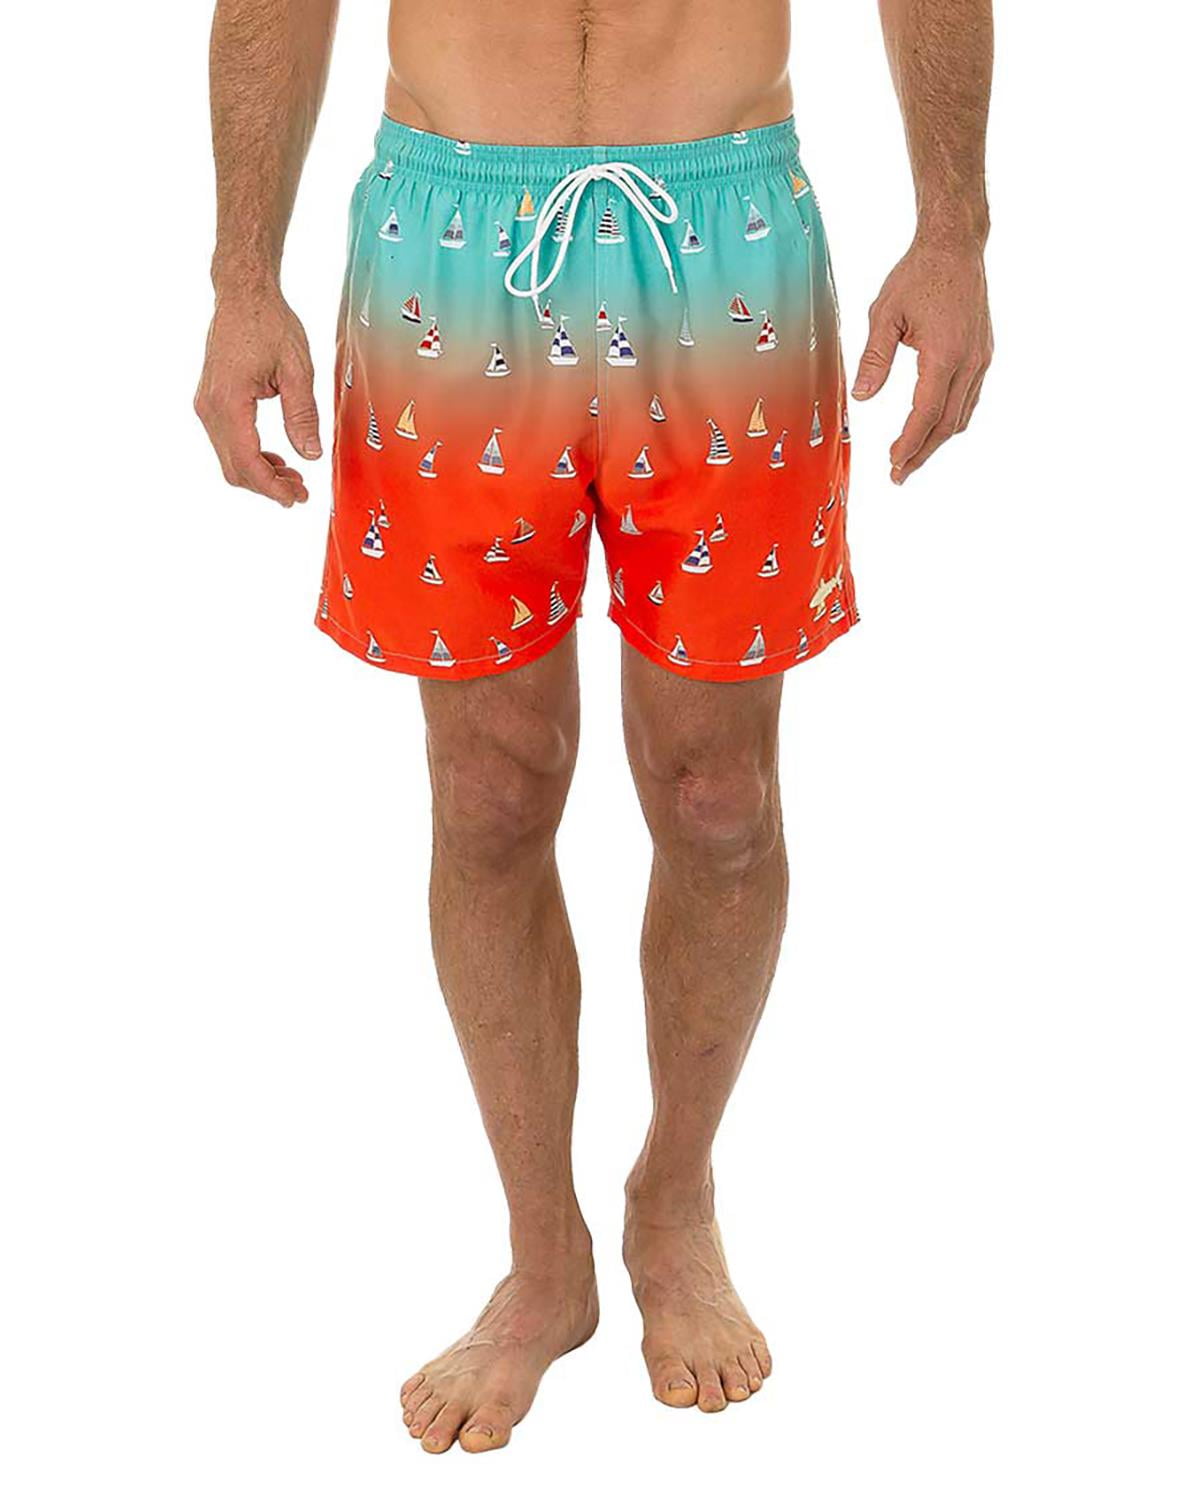 Orange for Men MCM Synthetic Men S Swim Trunks in Neon Orange Mens Clothing Beachwear Swim trunks and swim shorts 